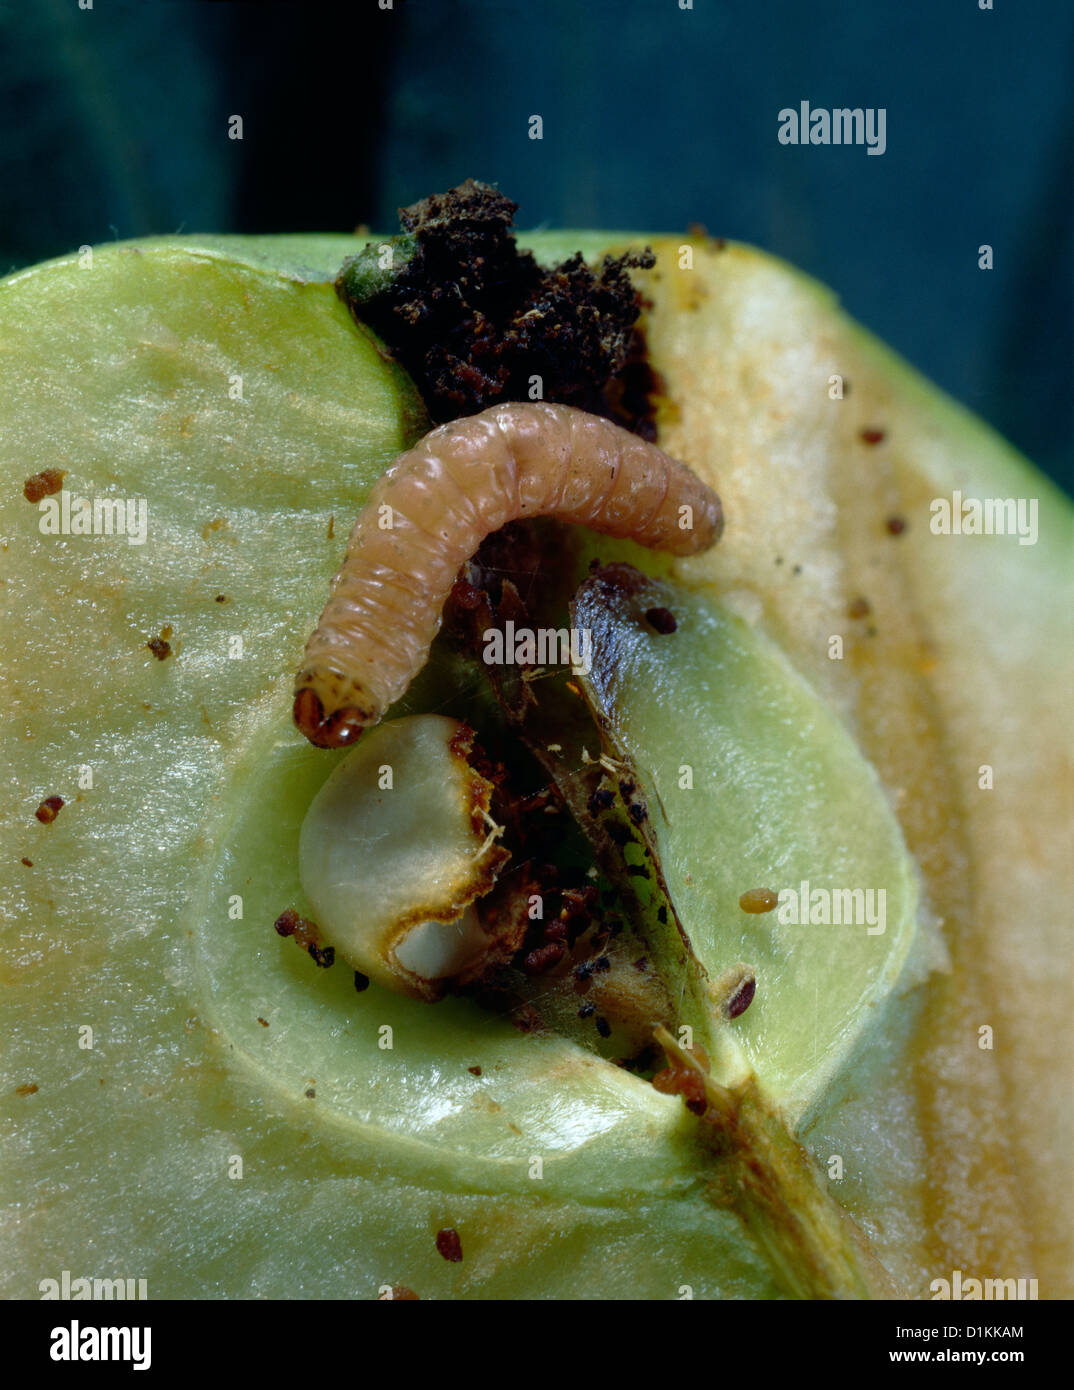 Carpocapsa del melo larva (carpocapsa sp./Cydia pomonella) è entrato calice di apple e abbiamo mangiato porzioni di seme in apple core Foto Stock